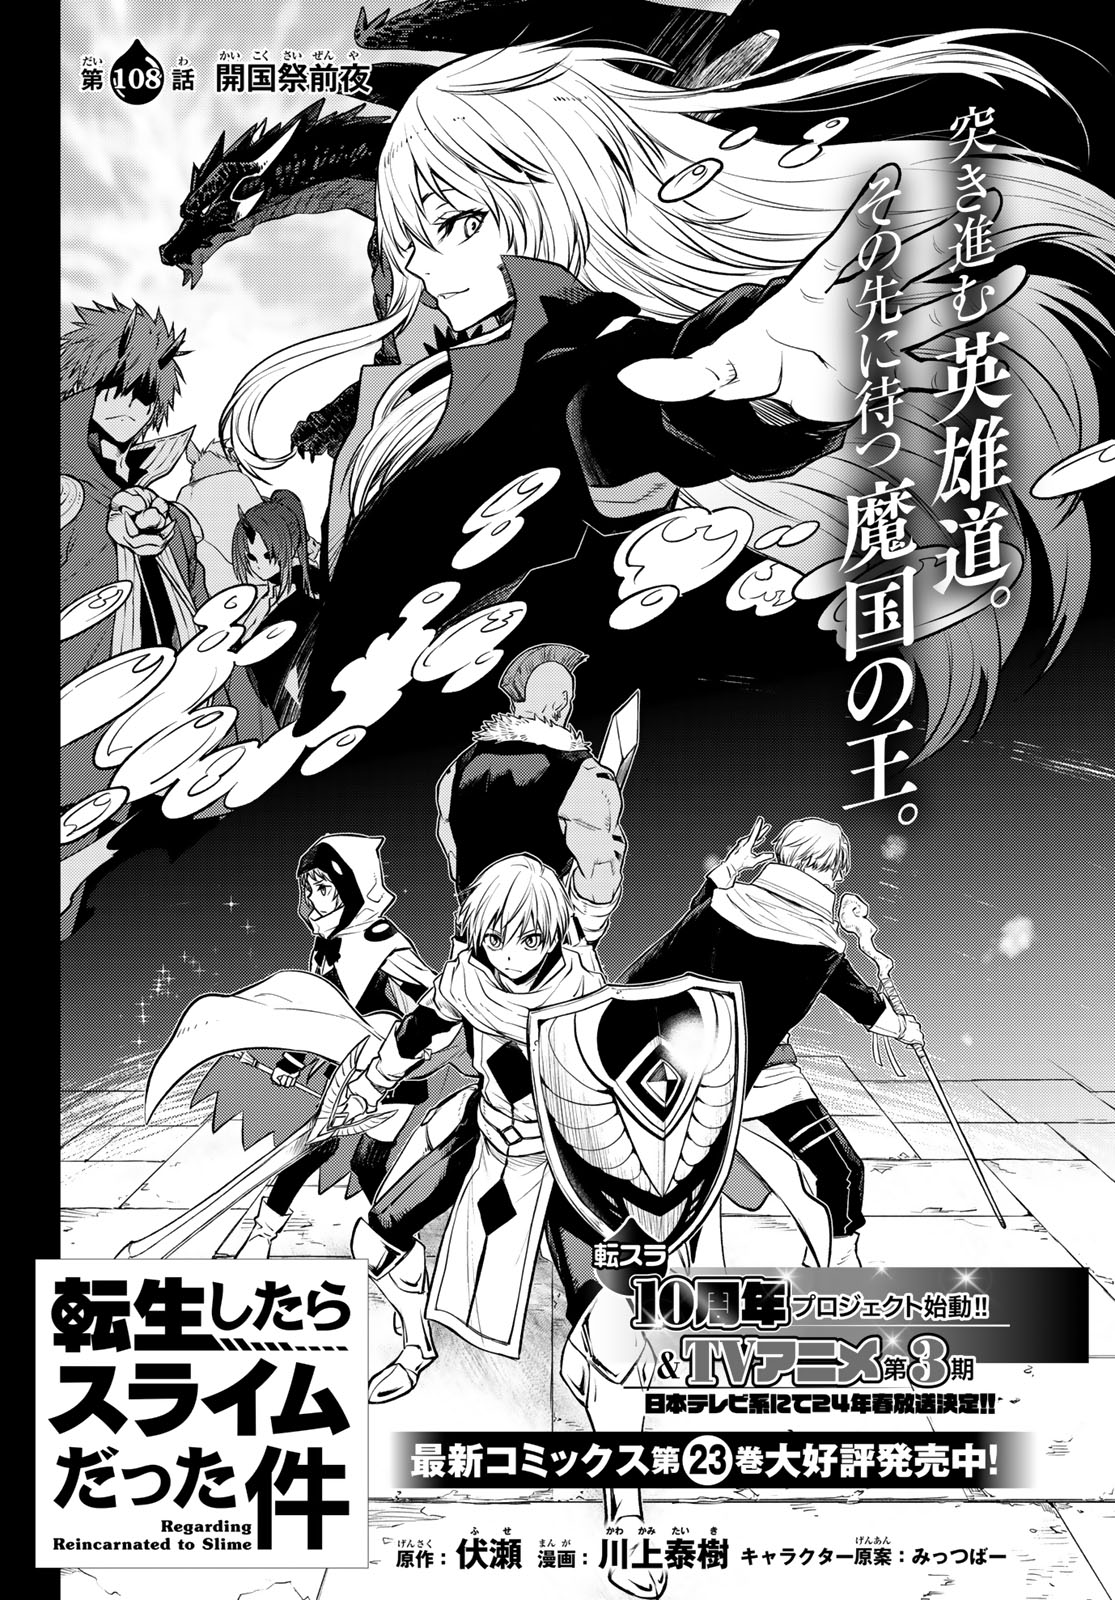 Manga Volume 11, Tensei Shitara Slime Datta Ken Wiki